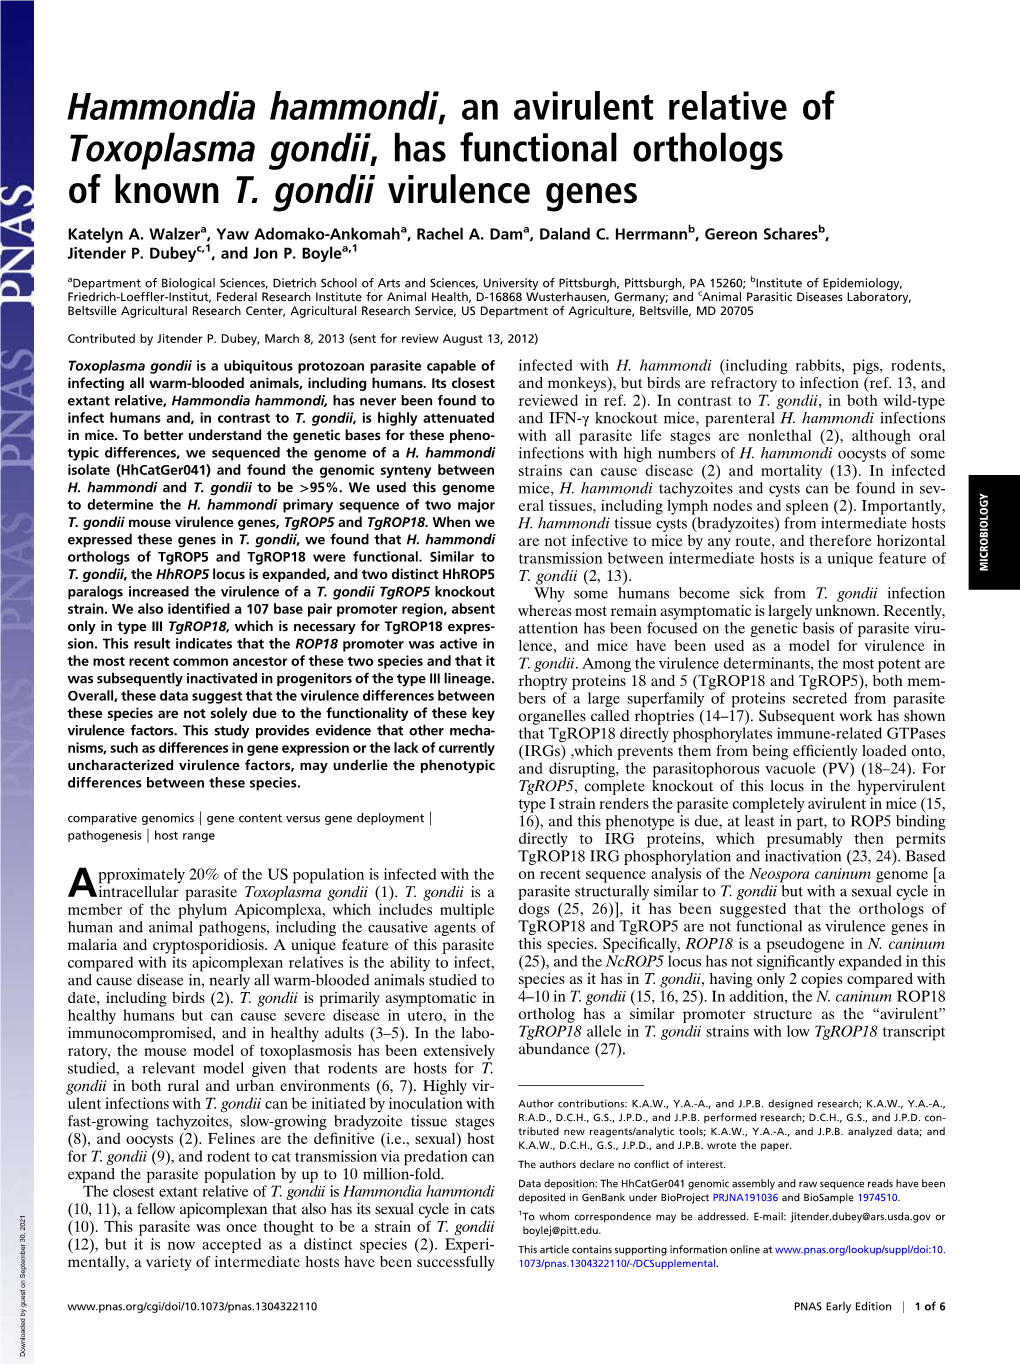 Hammondia Hammondi, an Avirulent Relative of Toxoplasma Gondii, Has Functional Orthologs of Known T. Gondii Virulence Genes